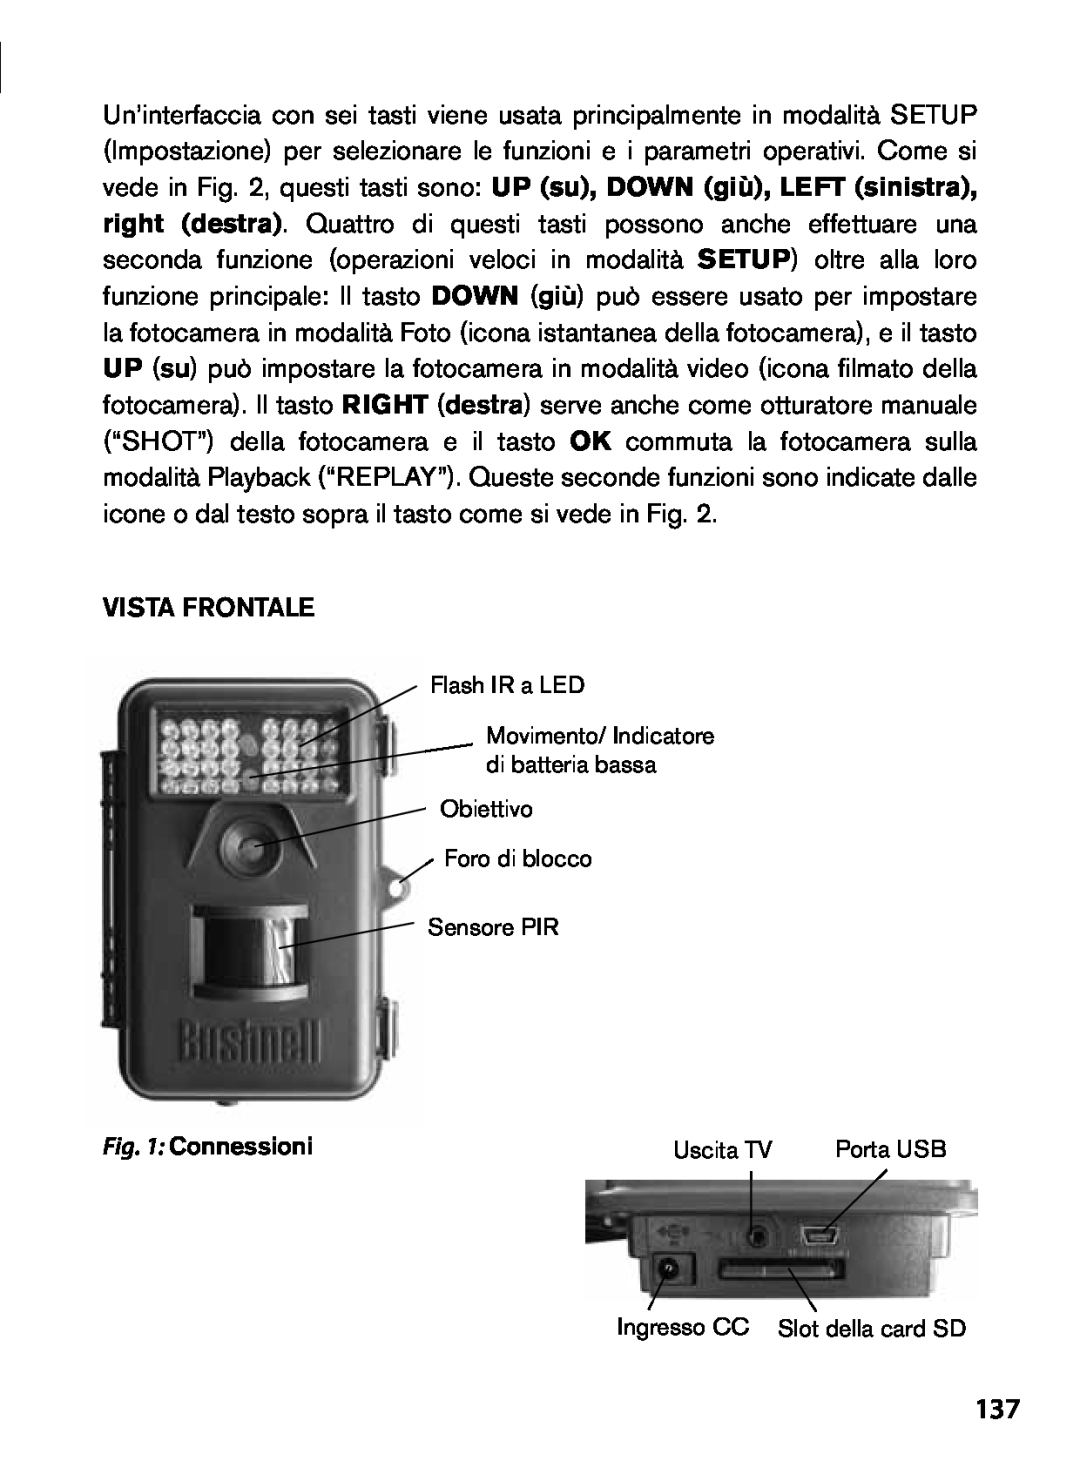 Bushnell 119435, 119455 Vista frontale, Flash IR a LED, Obiettivo Foro di blocco Sensore PIR, Connessioni, Uscita TV 